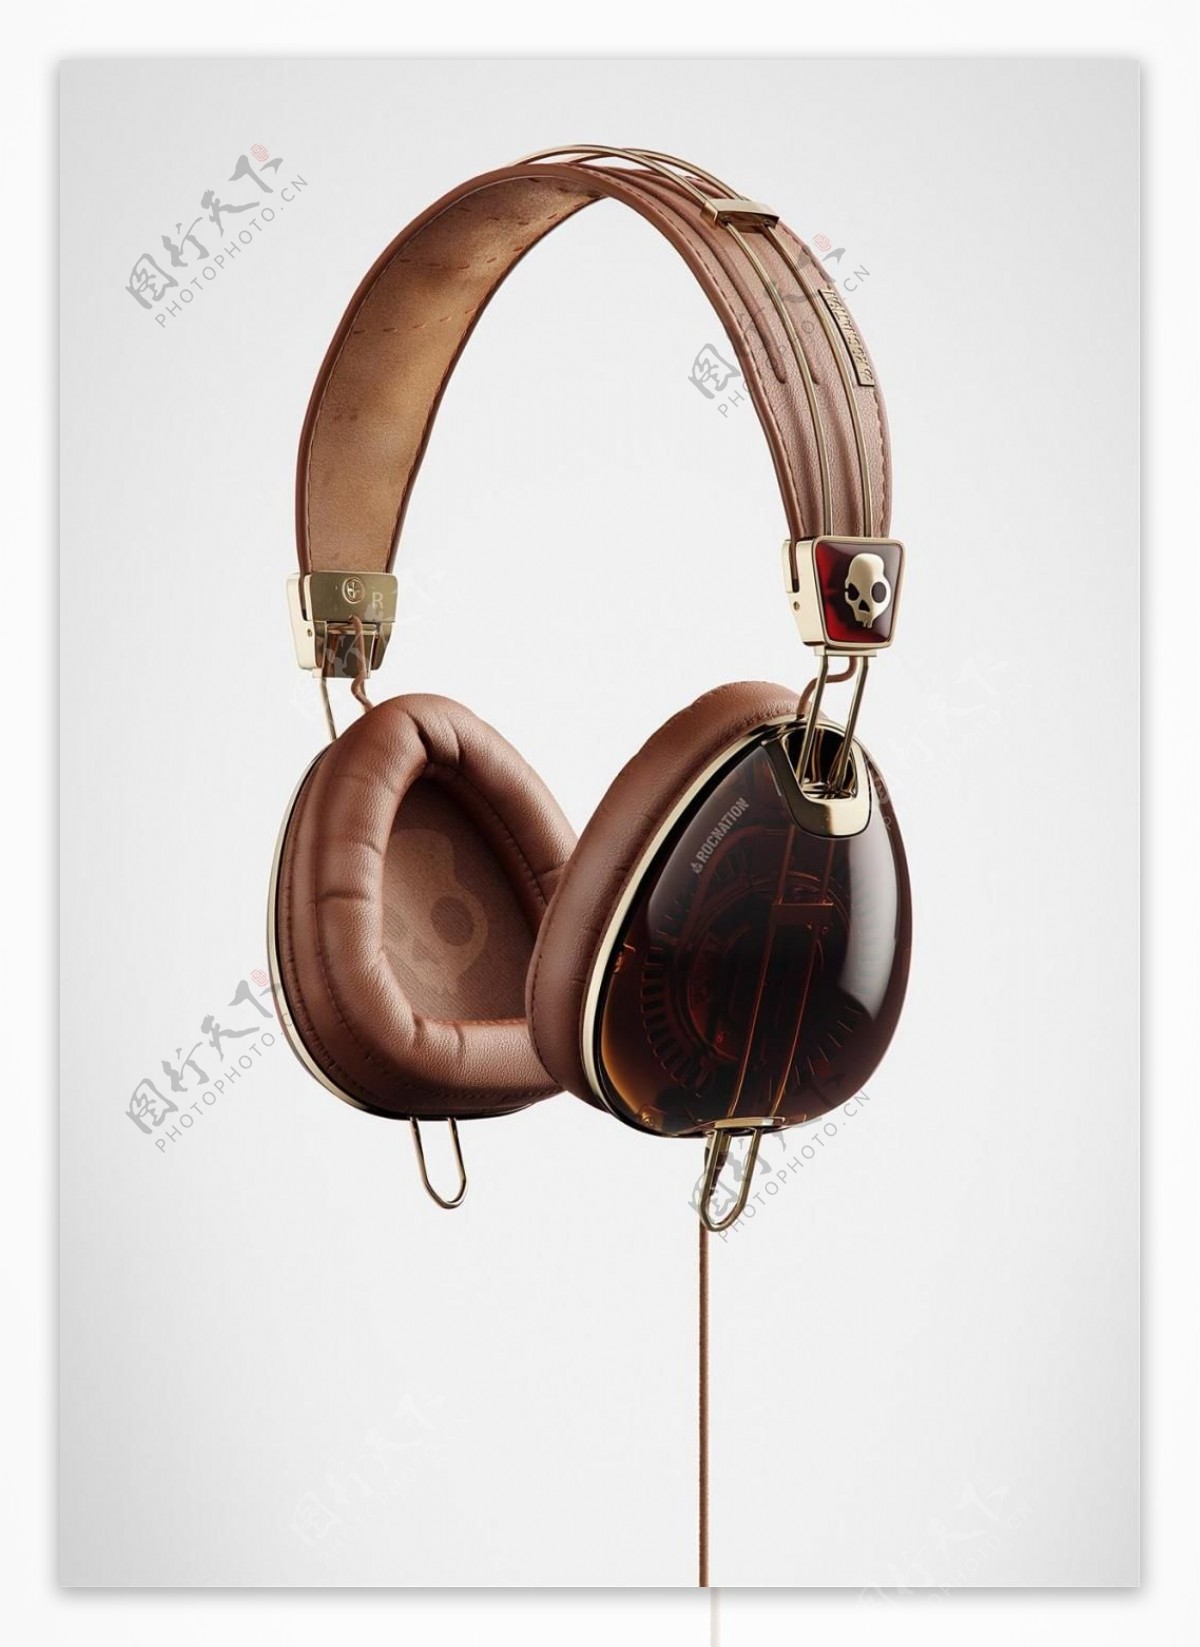 复古的耳机产品设计